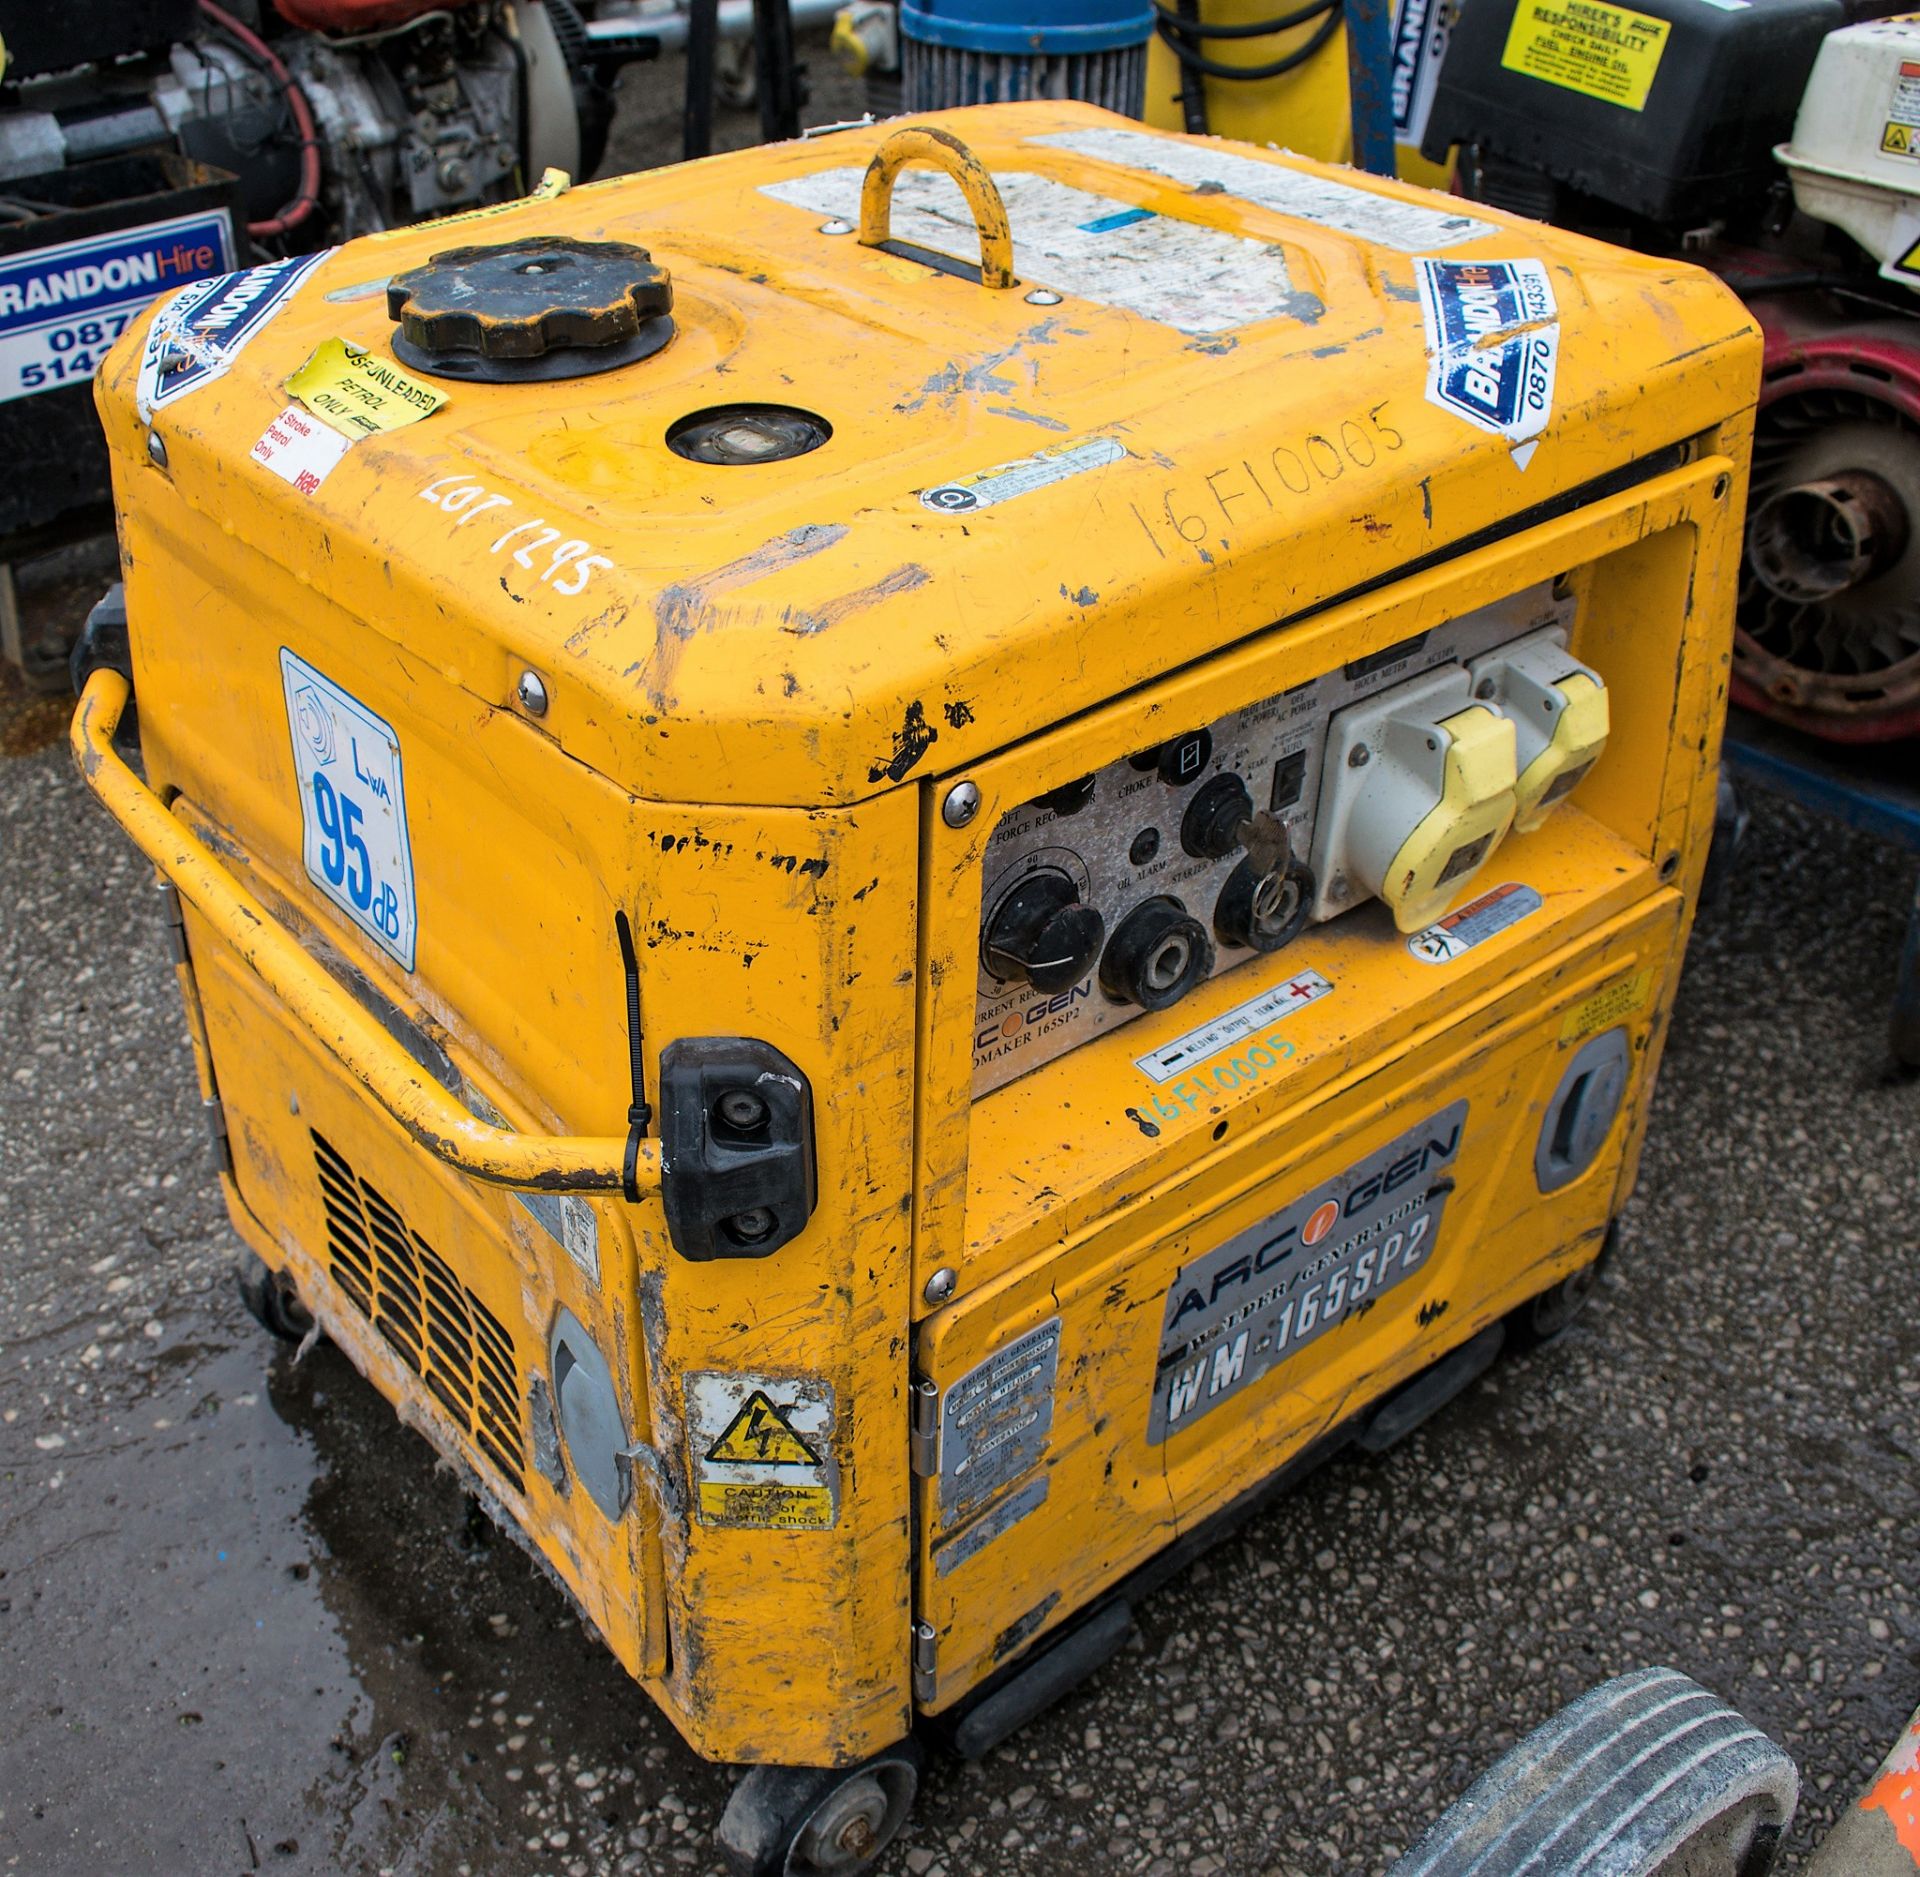 Arcgen WM165 petrol driven welder generator 16F10005